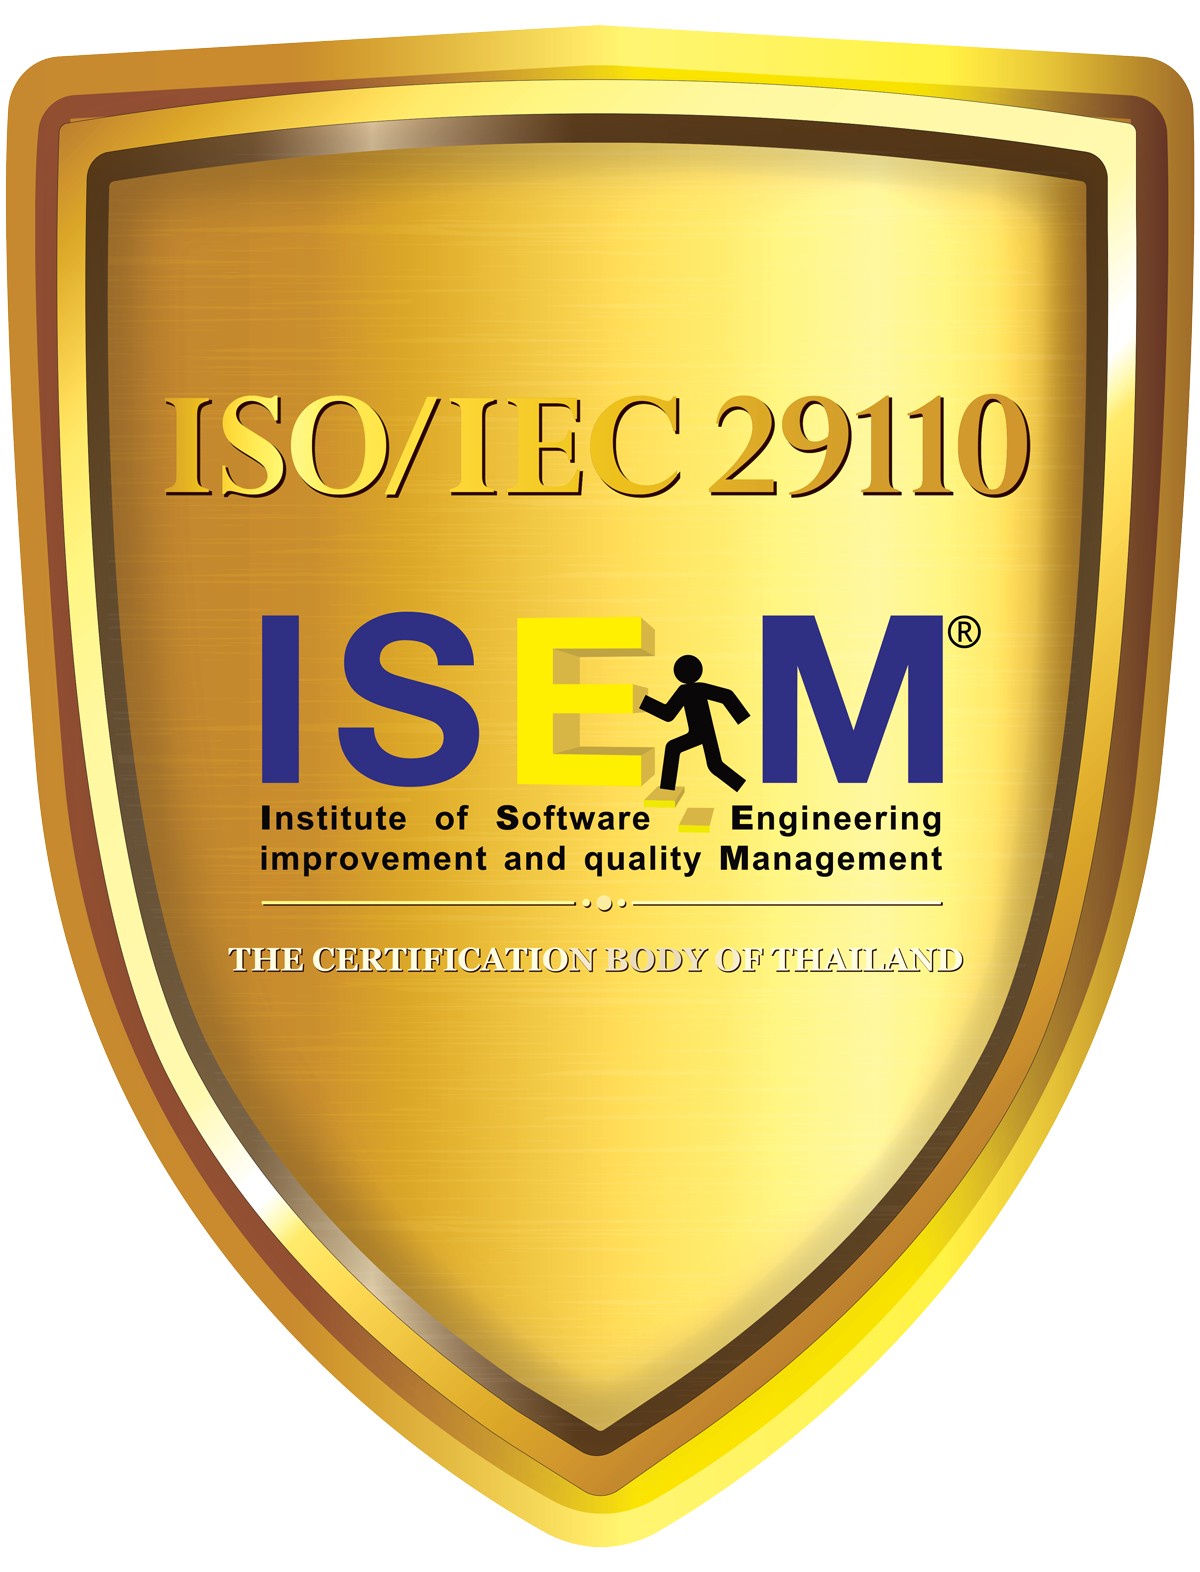 เน็ตเวย์ฯ ย้ำศักยภาพจัดการกระบวนการและพัฒนาซอฟต์แวร์ เสริมแกร่งติดปีกในเวทีไทยและสากล ด้วย ISO/IEC 29110-0020